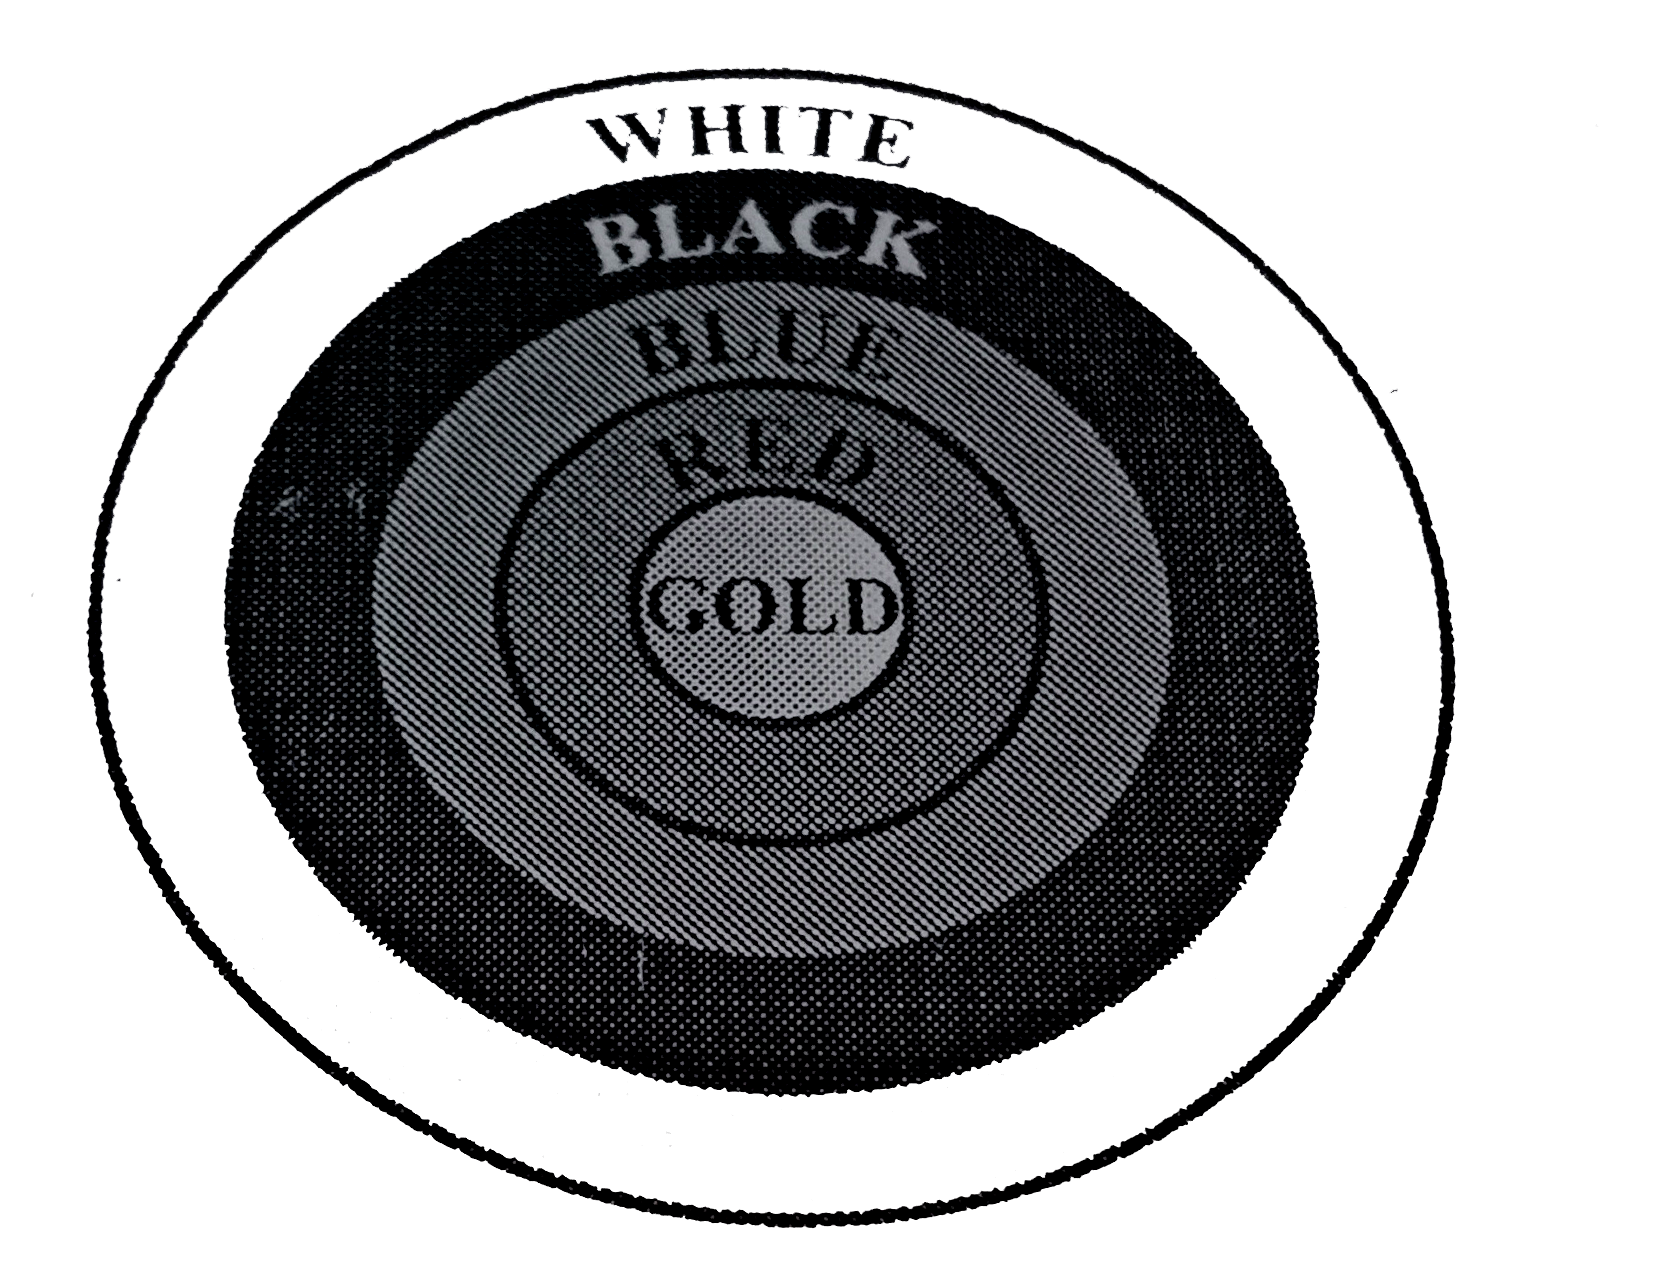 आकृति एक तीरंदाजी लक्ष्य को दर्शाती है, जिसमें केंद्र से बाहर की ओर पांच क्षेत्र GOLD, RED, BLUE, BLACK और WHITE चिन्‍हित है जिनसे अंक अर्जित किए जा सकते है। GOLD अंक वाले क्षेत्र का व्यास 21 cm है तथा प्रत्येक अनय पट्टी 10.5 cm चौड़ी है।  अंक प्राप्त कराने वाले इन पांचों क्षेत्रों में से प्रत्येक का क्षेत्रफल ज्ञात कीजिए।